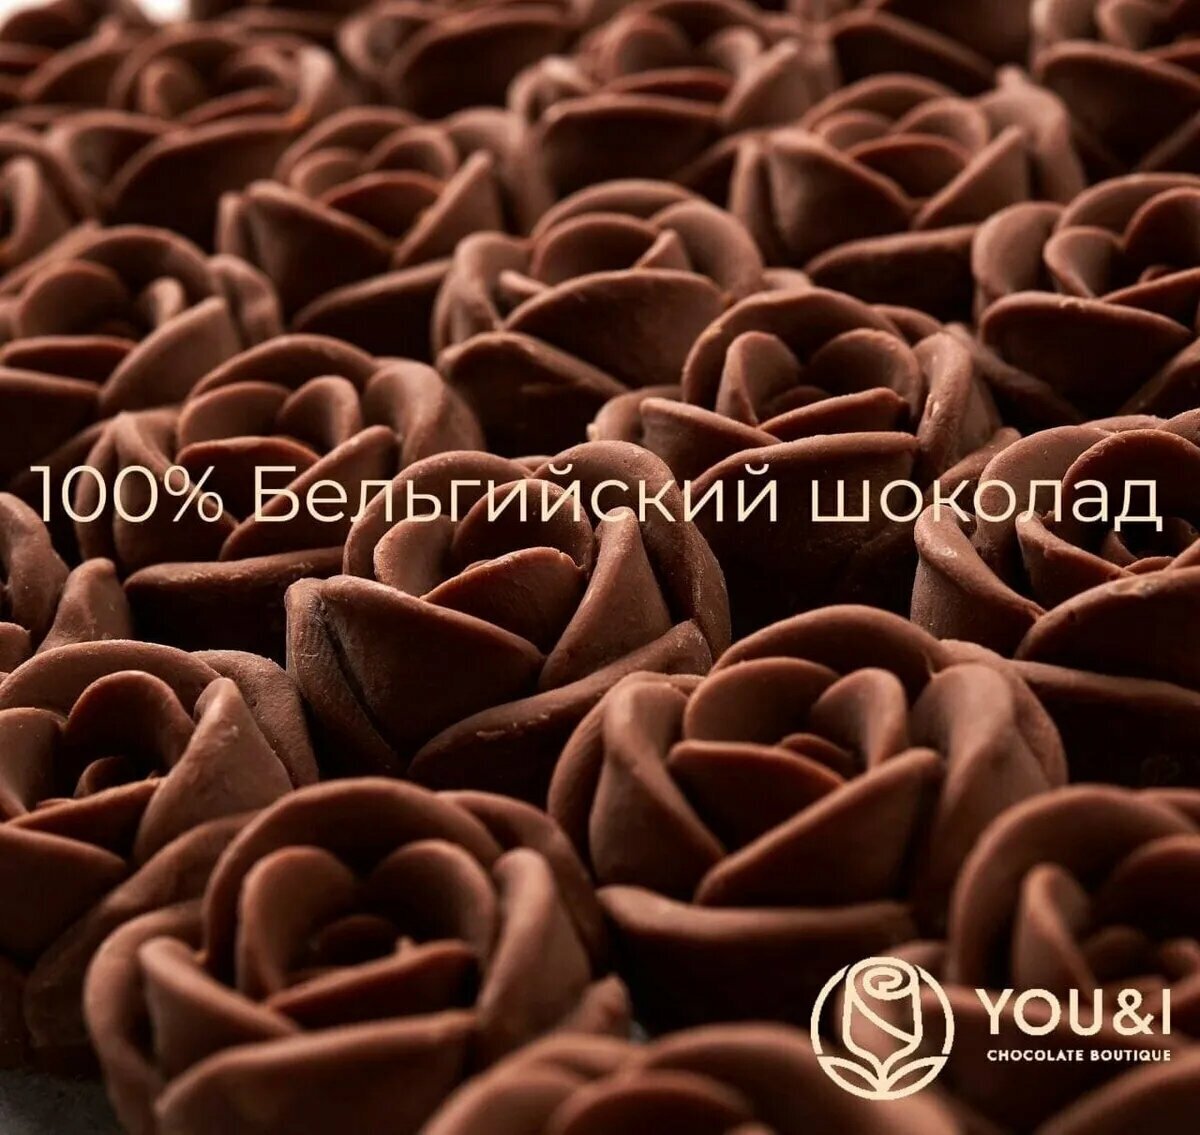 19 шоколадных роз в букете You&i Бельгийский шоколад вкусный подарочный набор